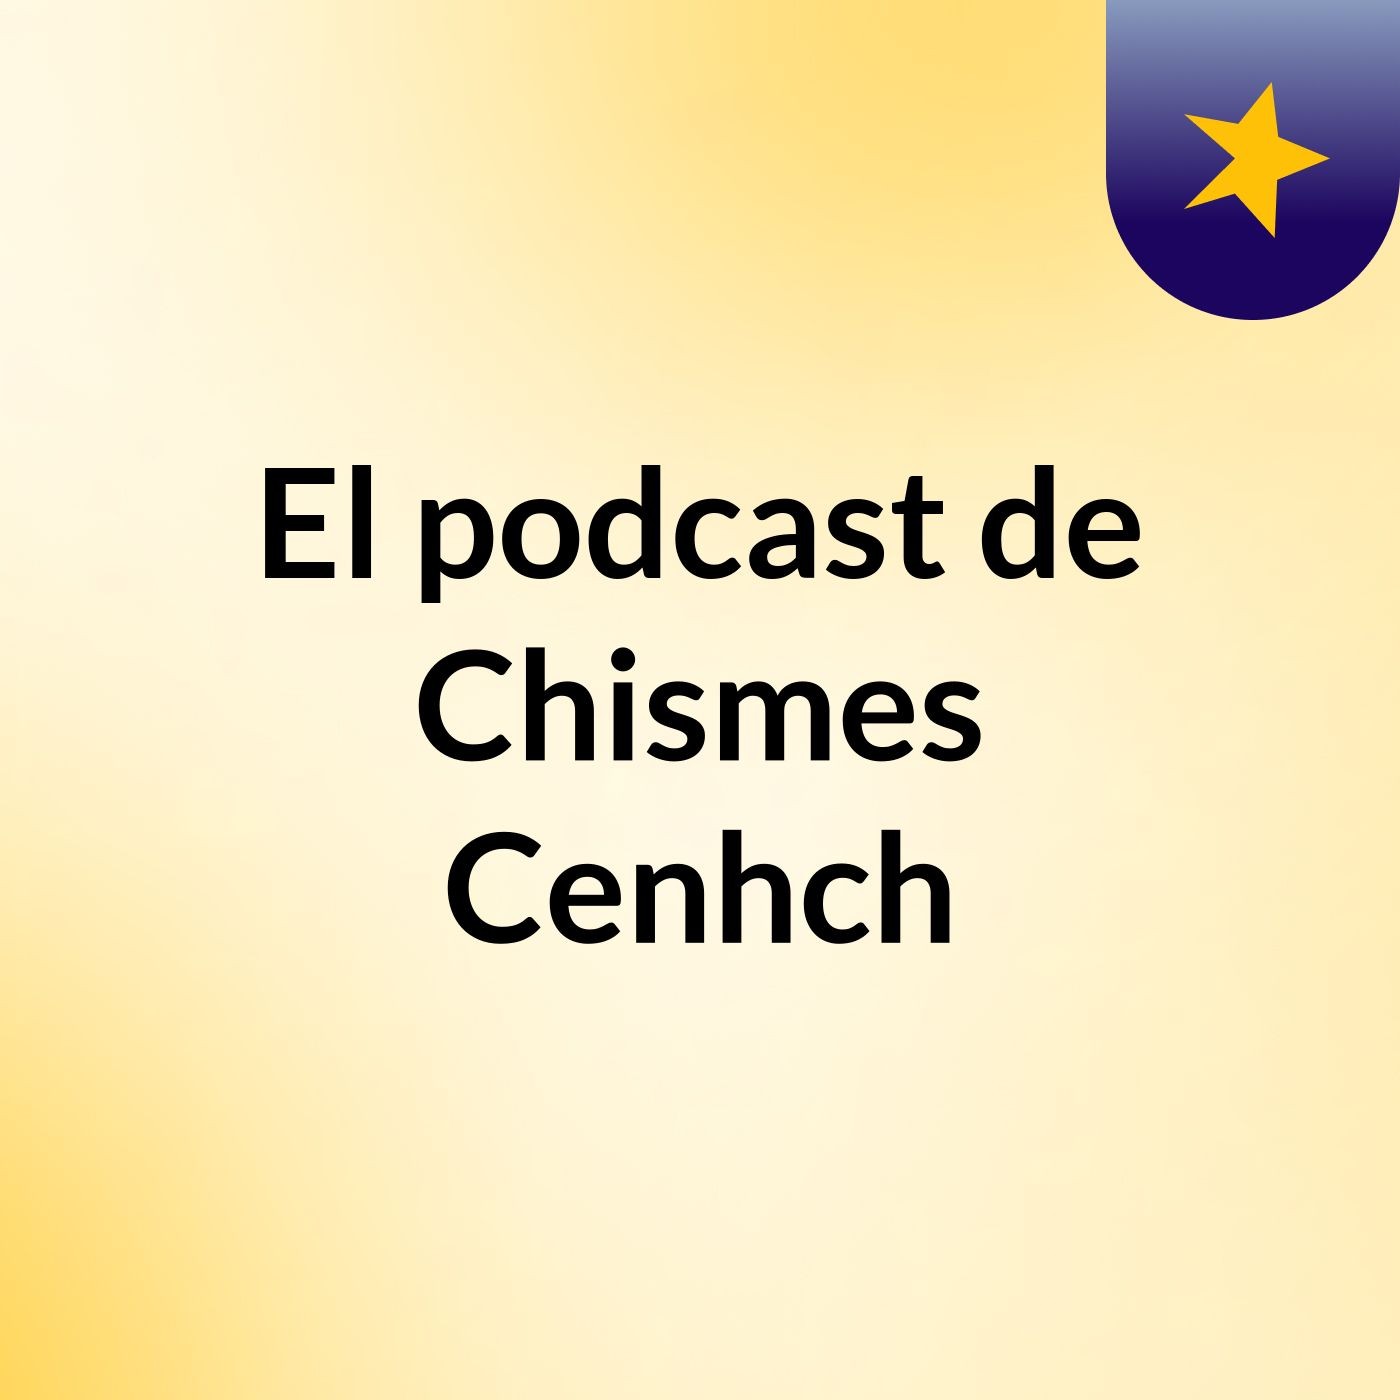 El podcast de Chismes Cenhch